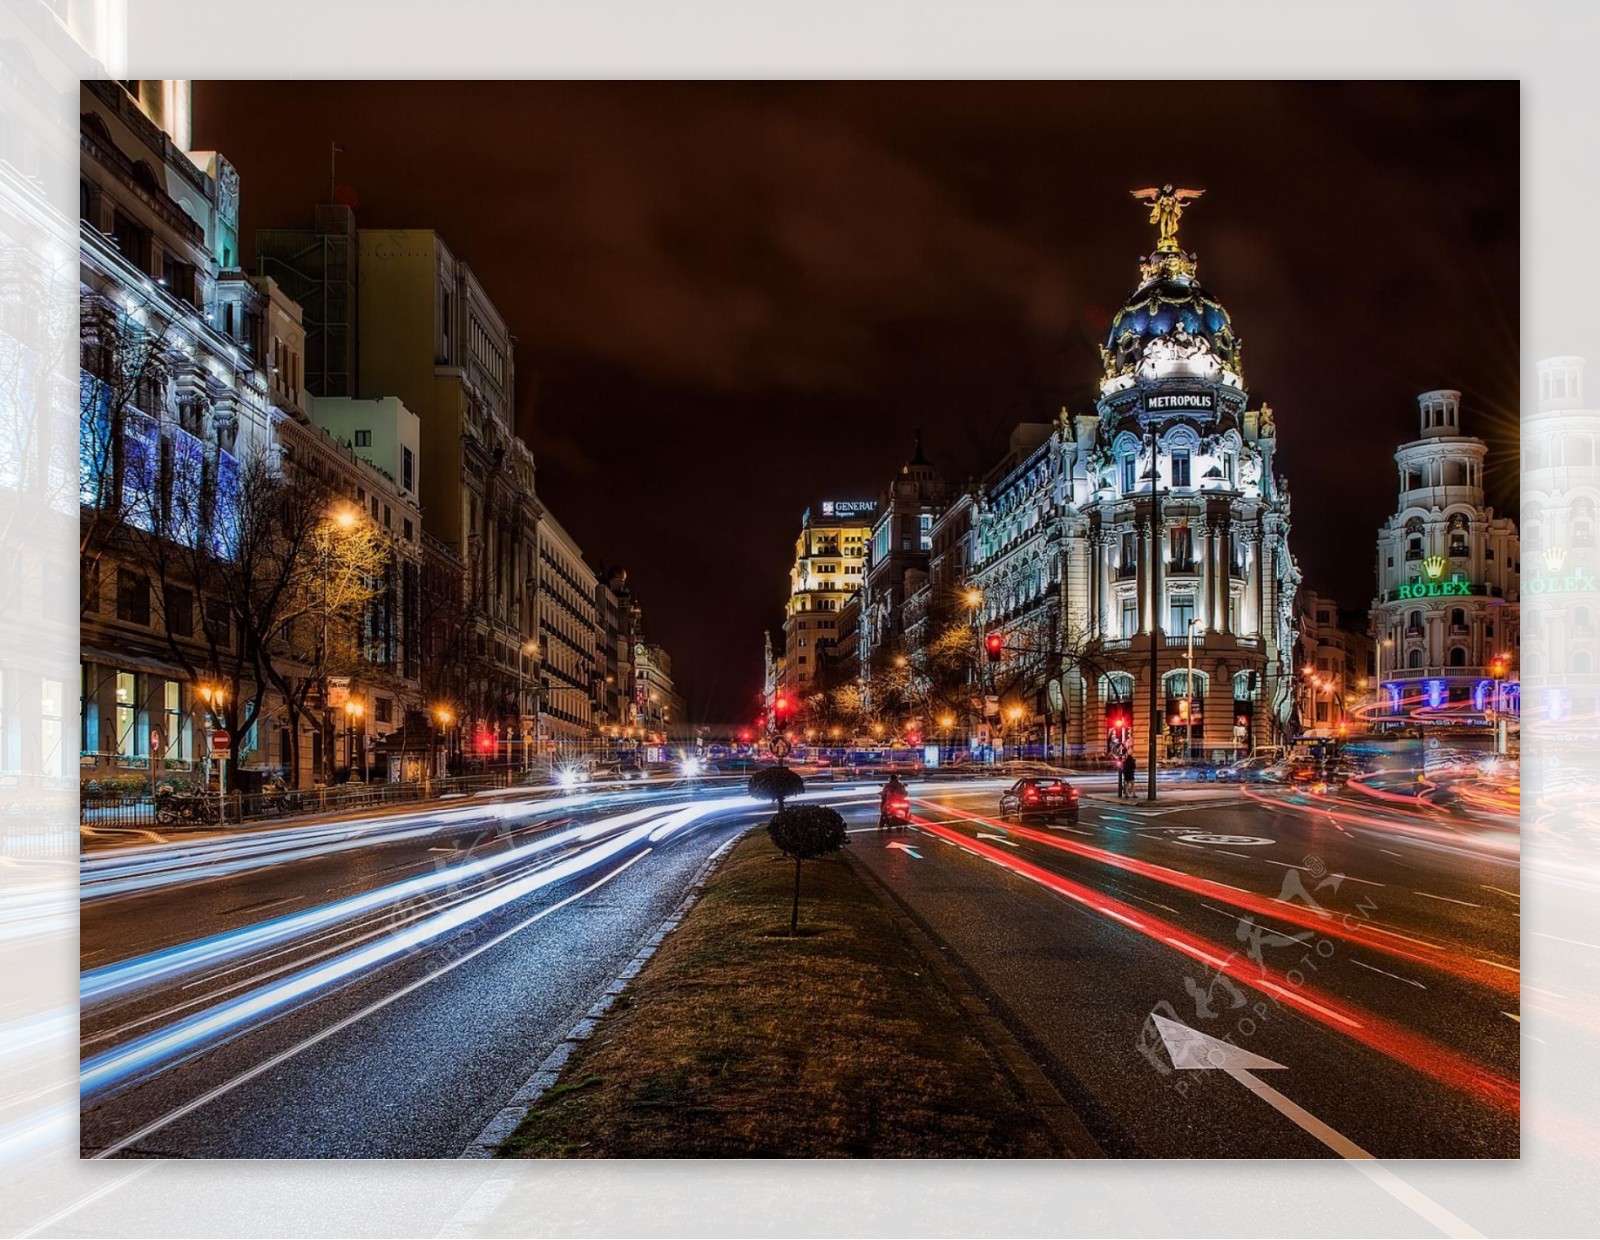 马德里夜晚街景图片